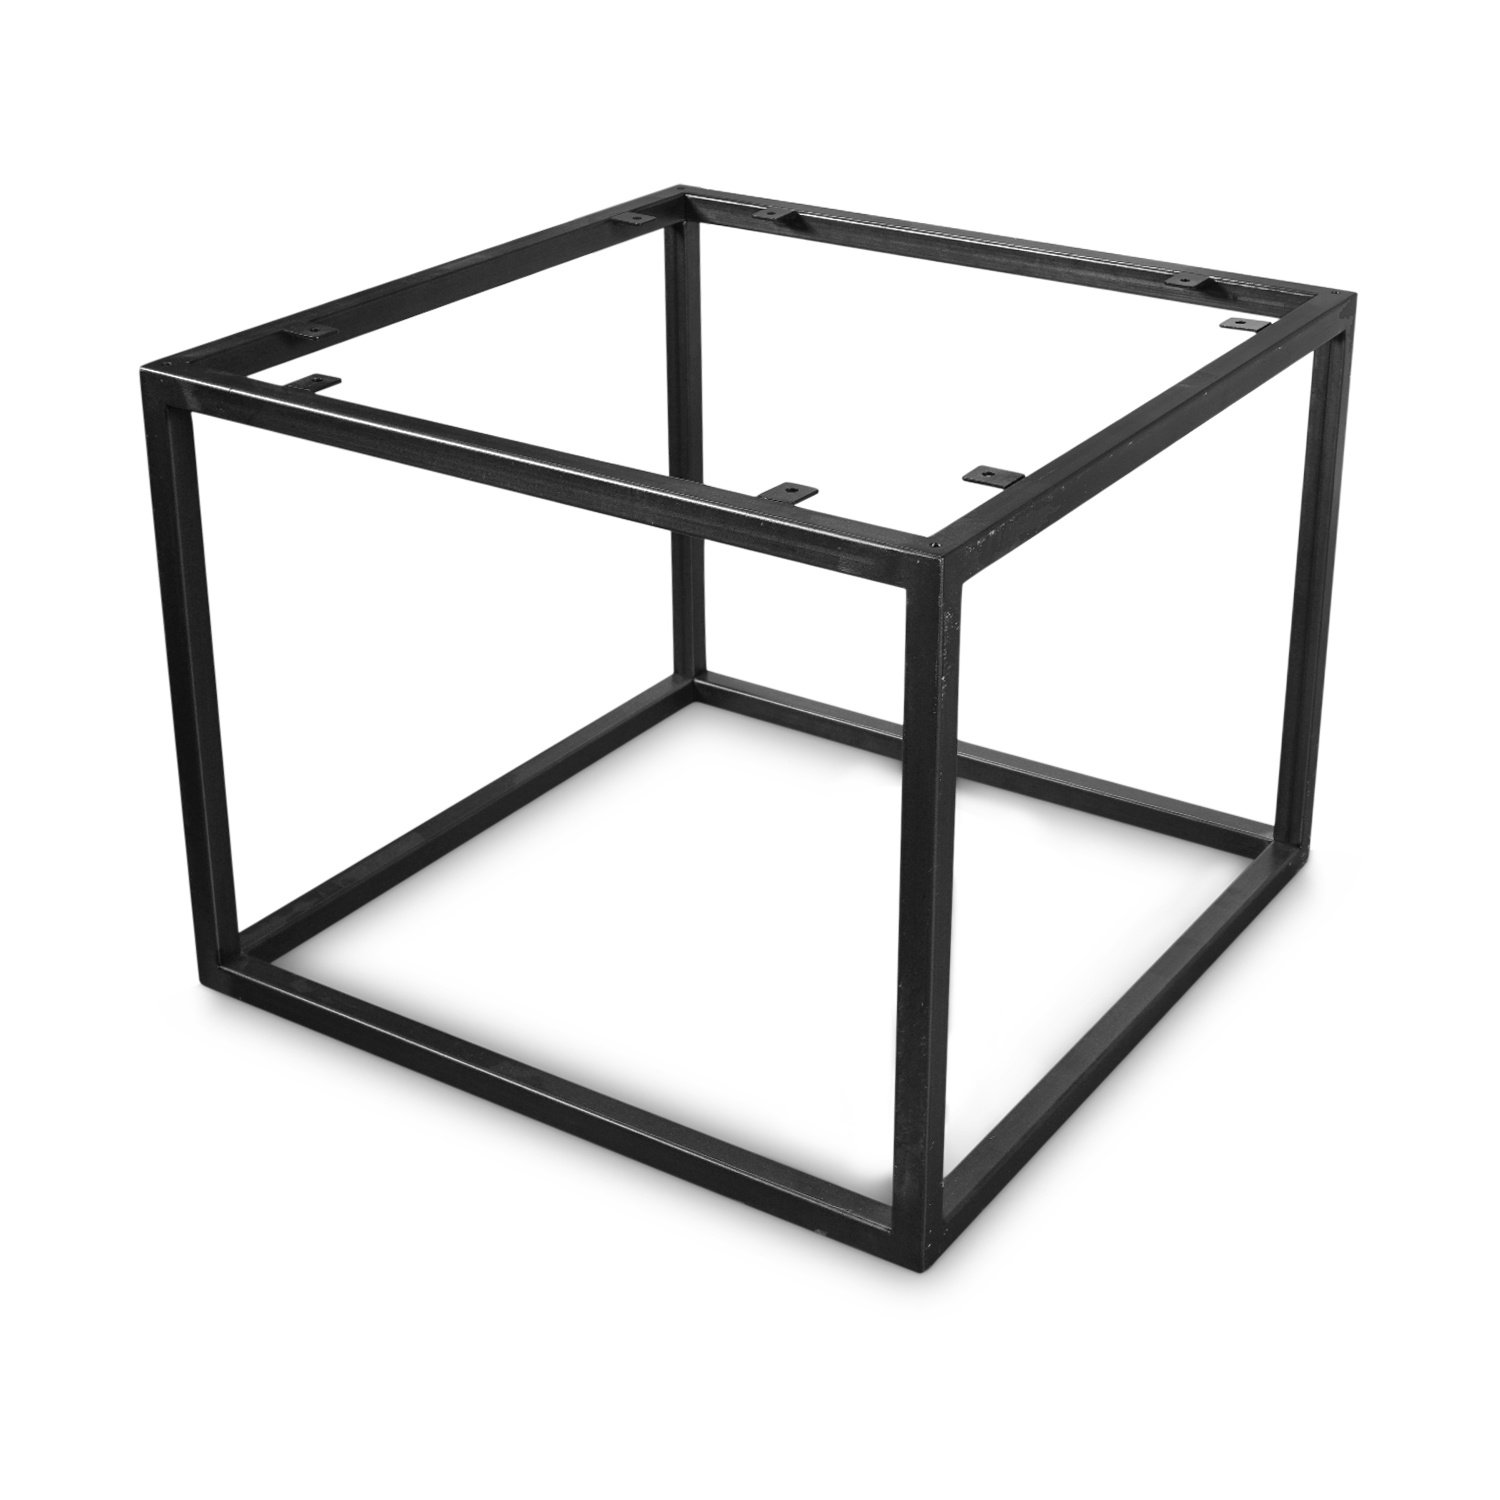  Couchtisch Frame Gestell Metall - Viereck  - verschiedene Größen - 38 cm hoch - Stahl Couchtisch Tischgestell - Transparant beschichtet